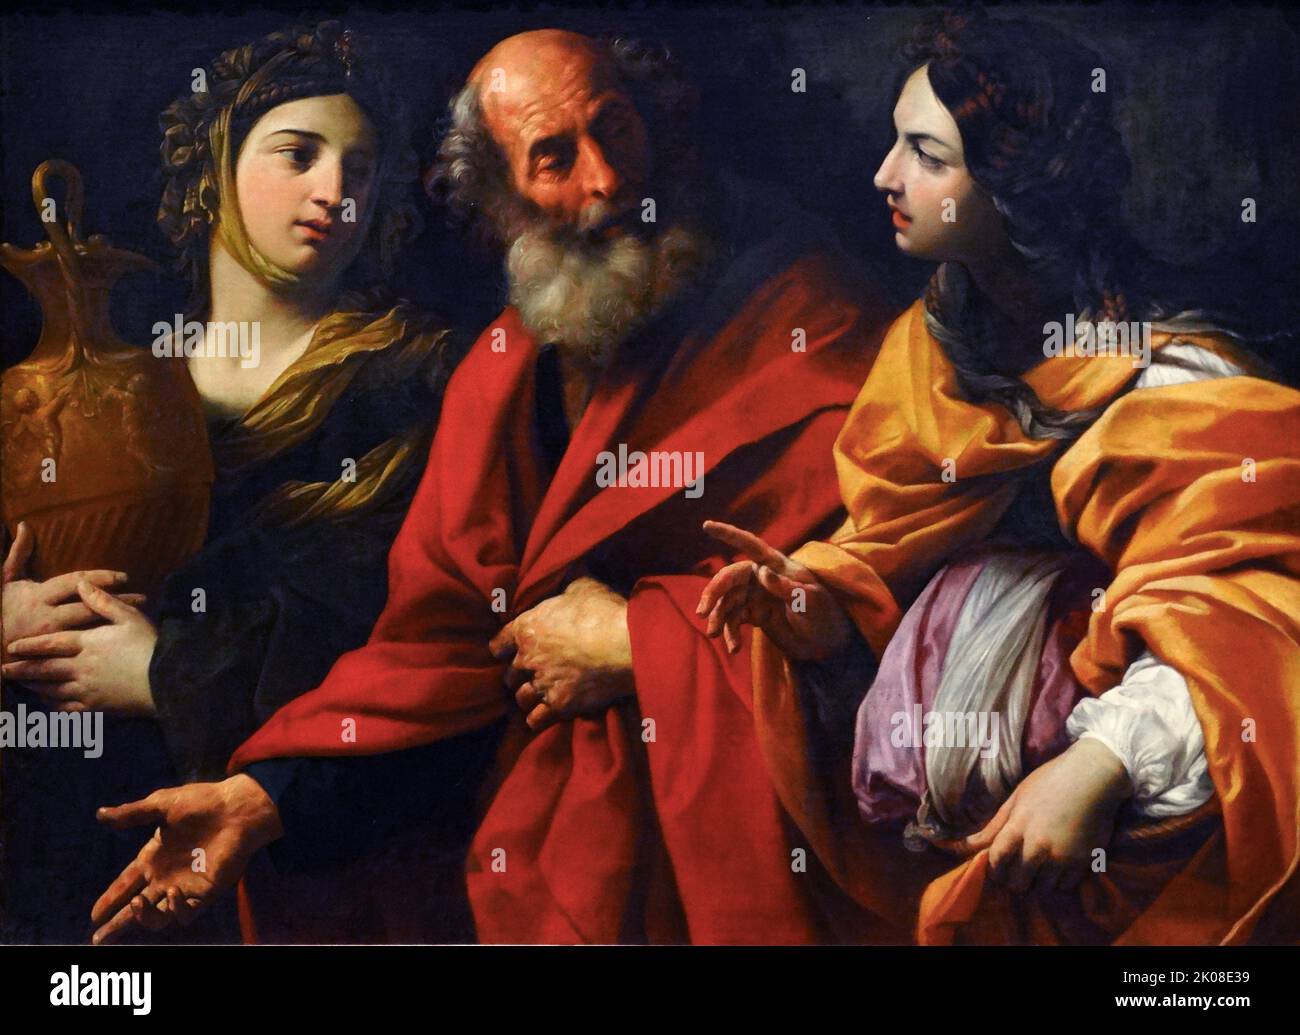 Lot und seine Töchter verlassen Sodom, c1615-16, Gemälde von Guido Reni (4. November 1575 - 18. August 1642) war ein italienischer Maler der Barockzeit Stockfoto